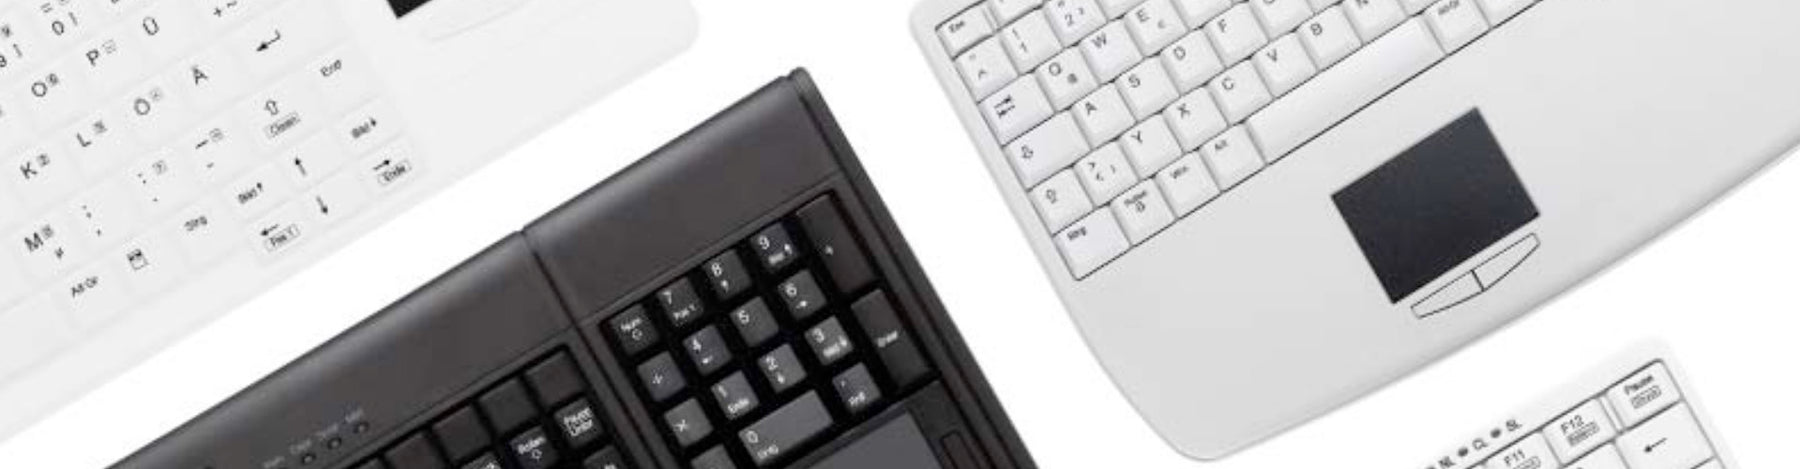 Active Keys: SplashKey Series Keyboards